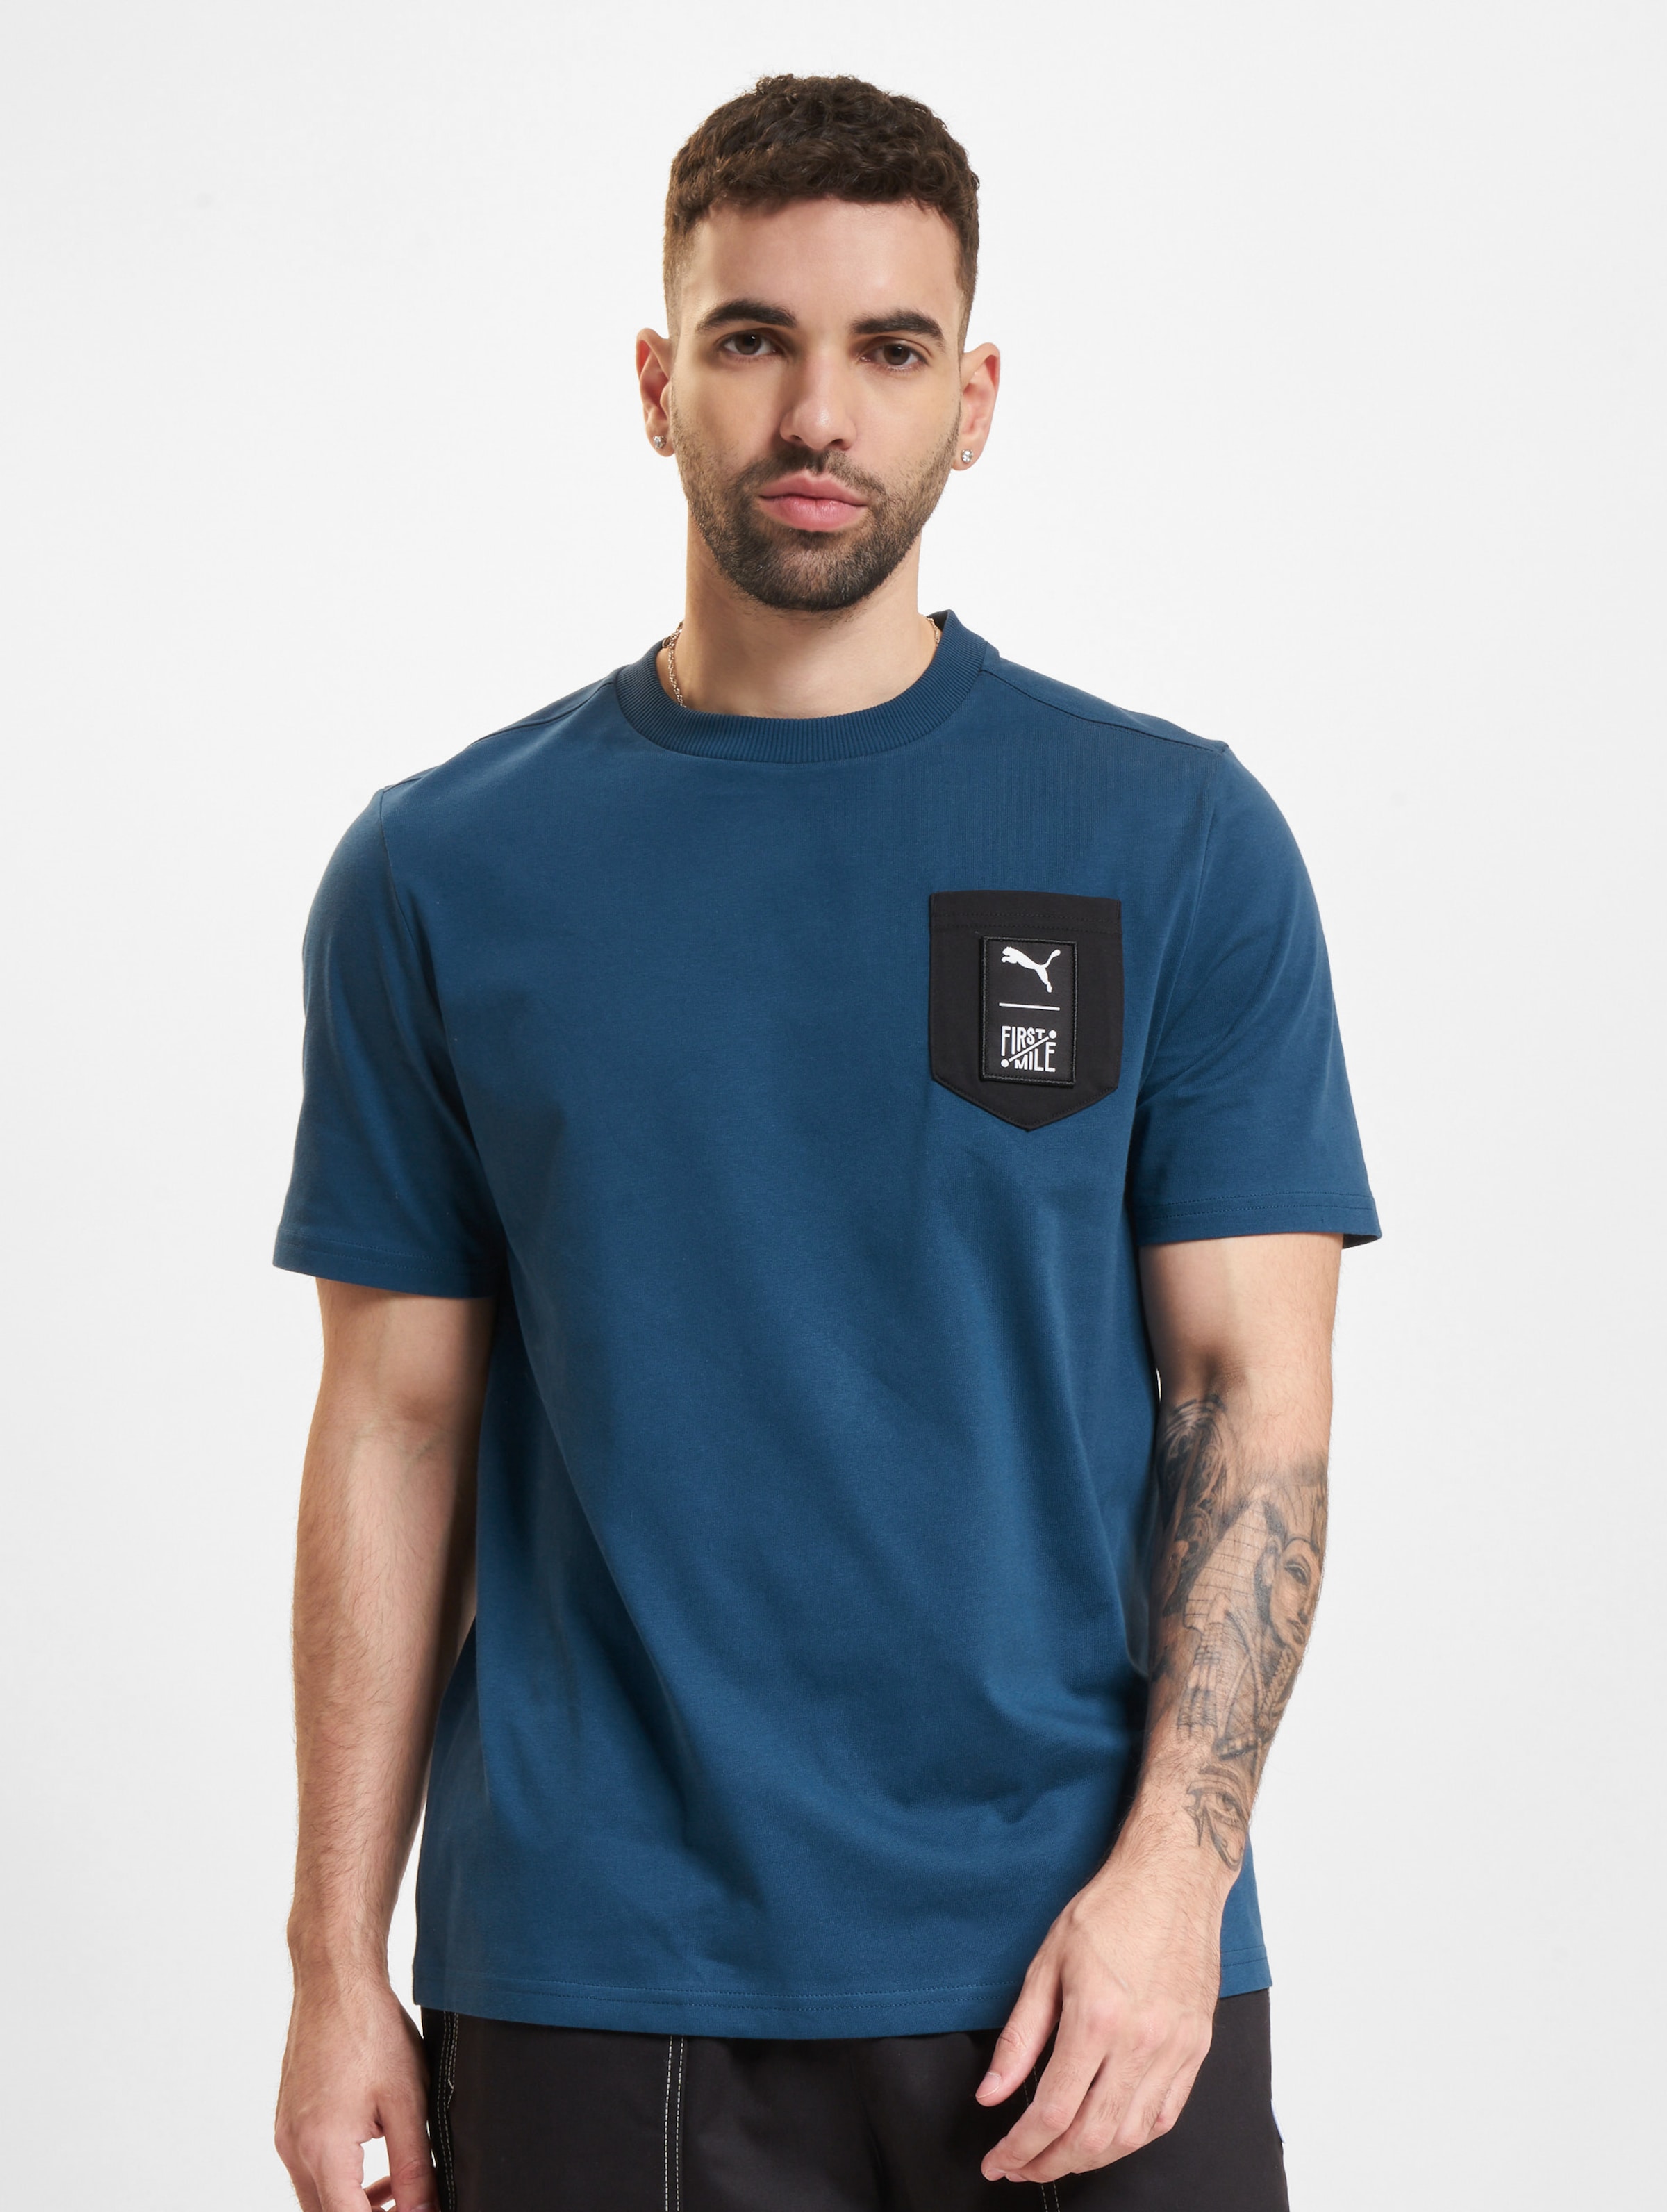 Puma First Mile T-Shirt Männer,Unisex op kleur blauw, Maat S